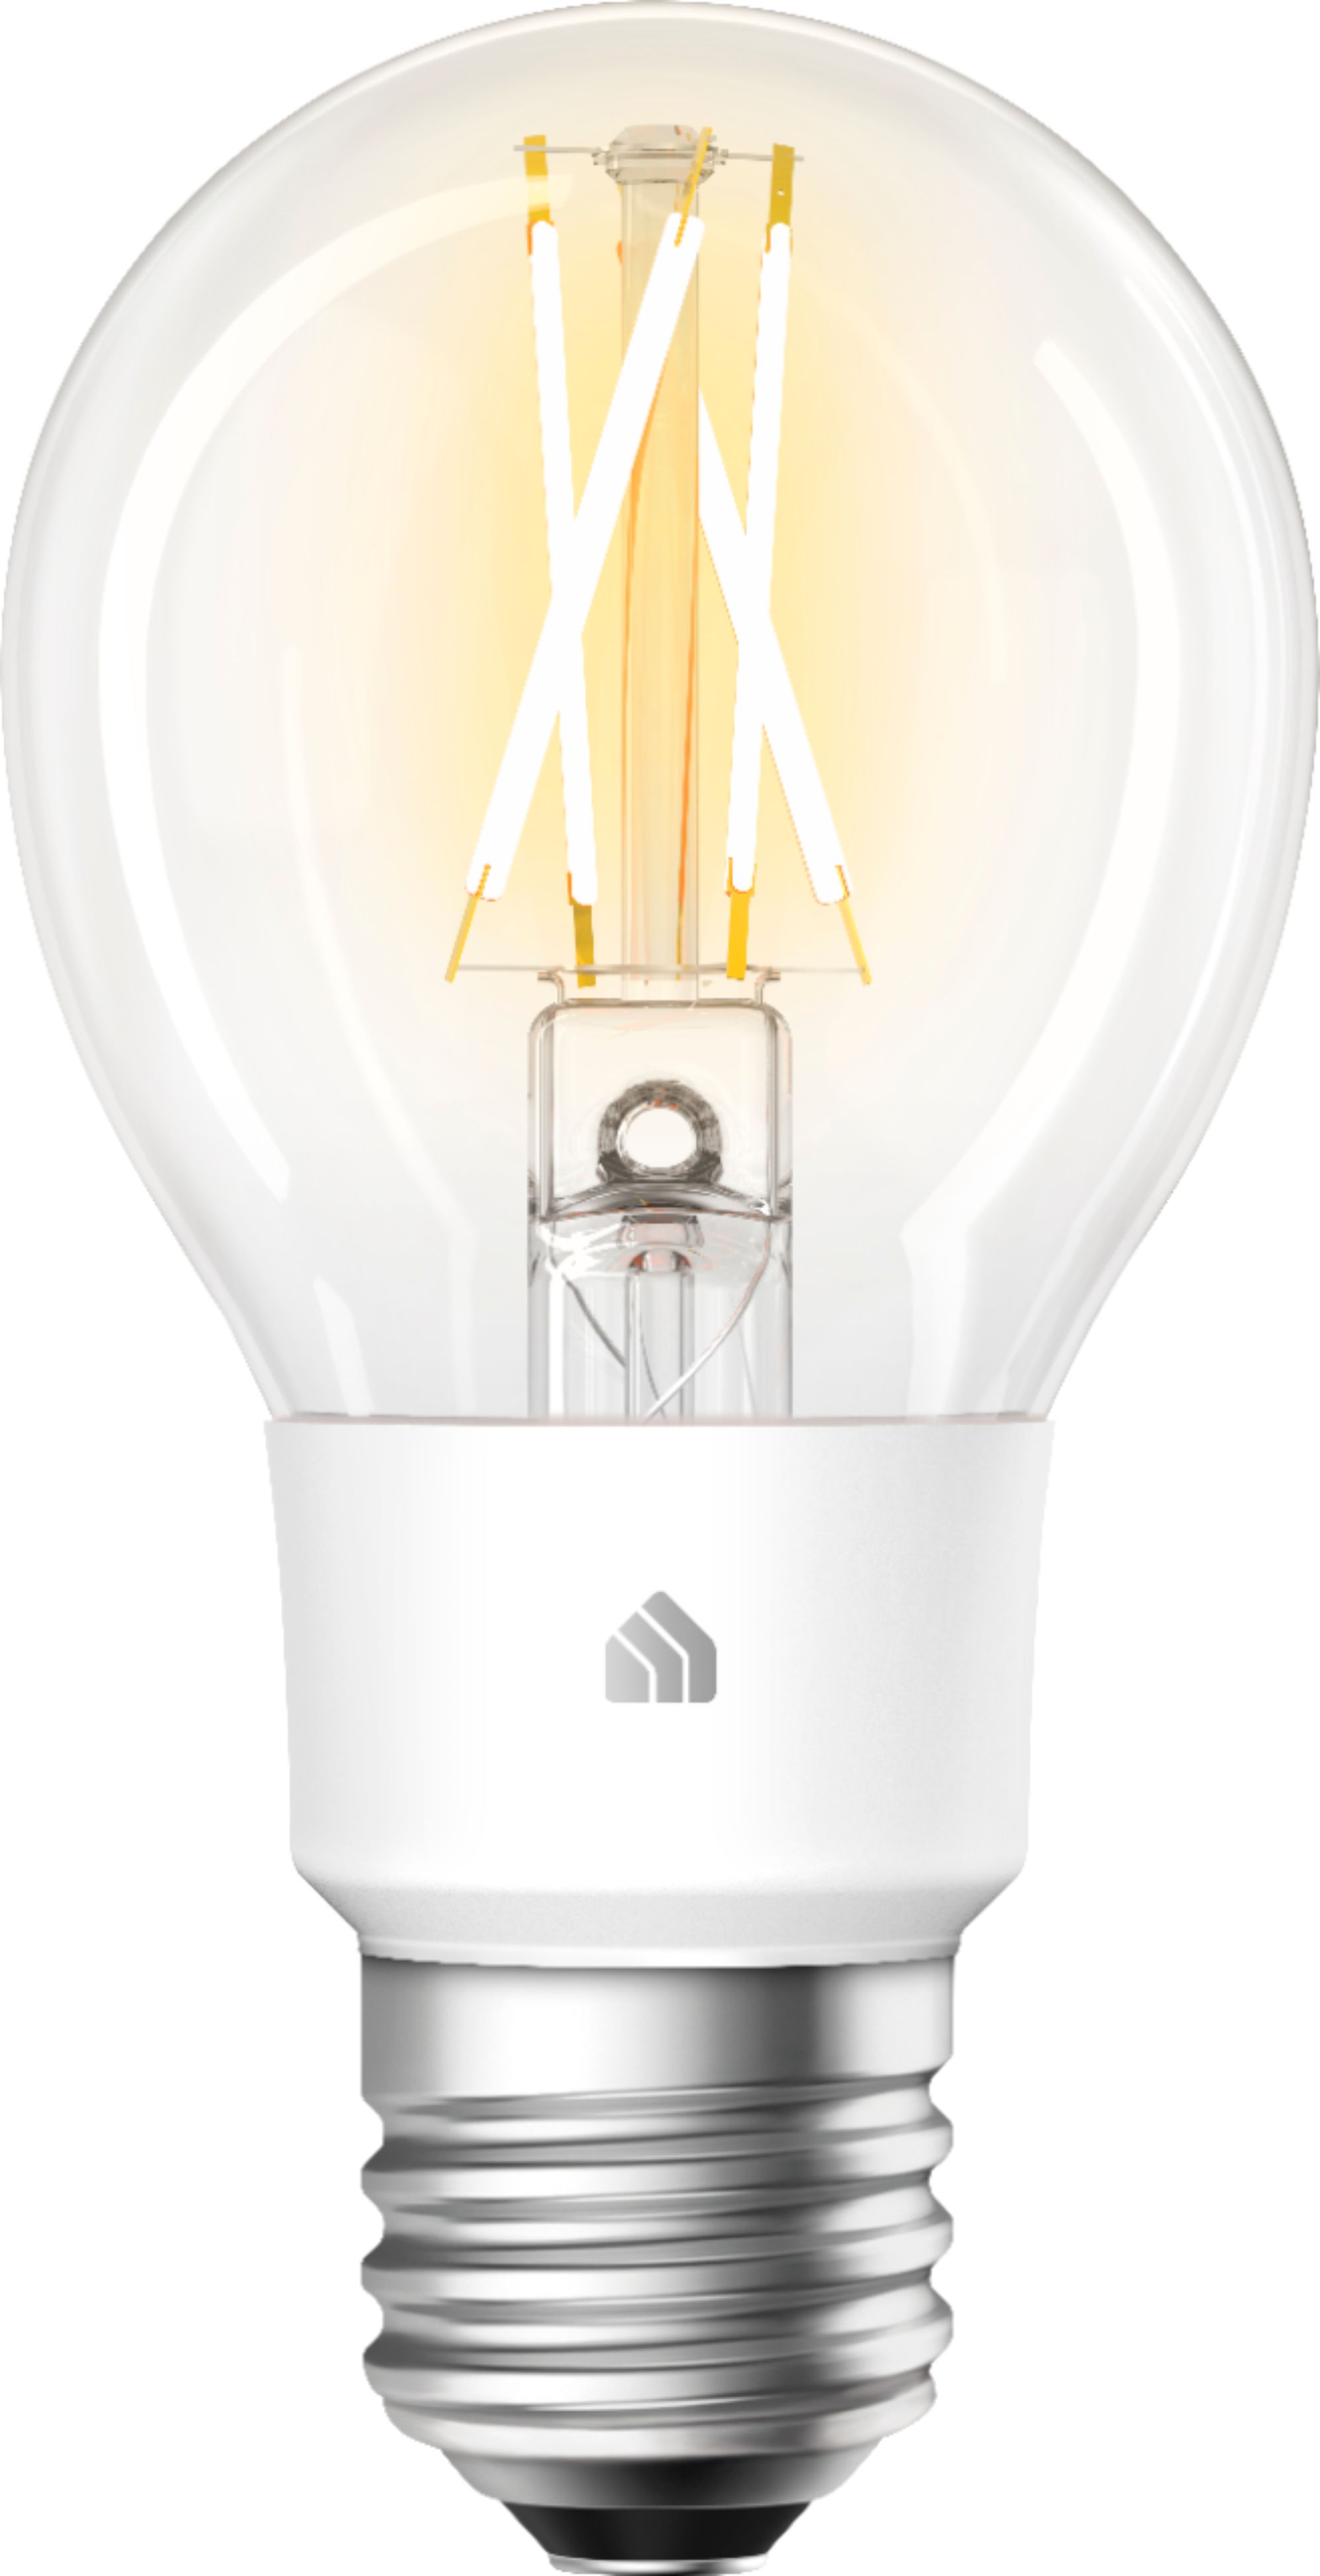 TP-Link Smart A19 Wi-Fi Smart Light Bulb Transparent KL50 - Best Buy